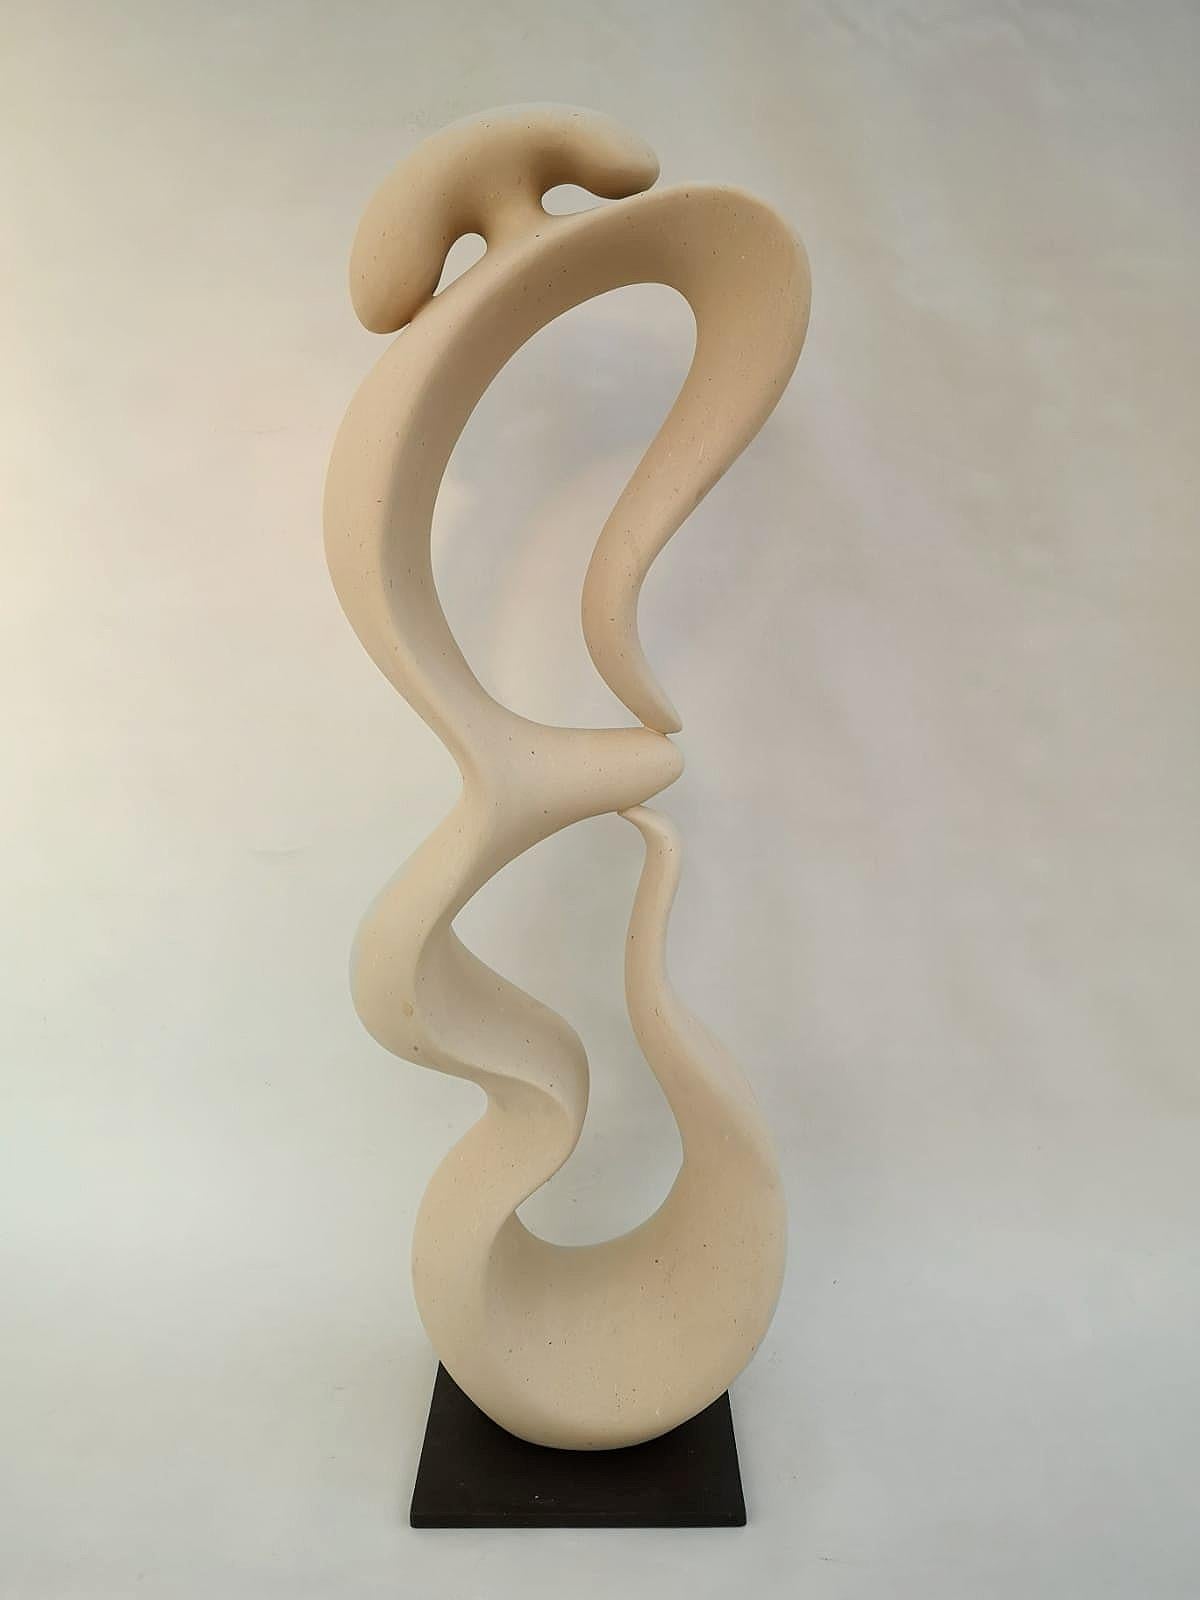 Abstrakte Skulptur des 21. Jahrhunderts BLANDAMENTA von Renzo Buttazzo aus Italien. Maße: Höhe 80 cm.

Skulptur in Lecce Stein
Wird mit einem Echtheitszertifikat geliefert.

Seit 1886 arbeitet Renzo Buttazzo mit Pietra Leccese (Kalkstein aus Lecce).